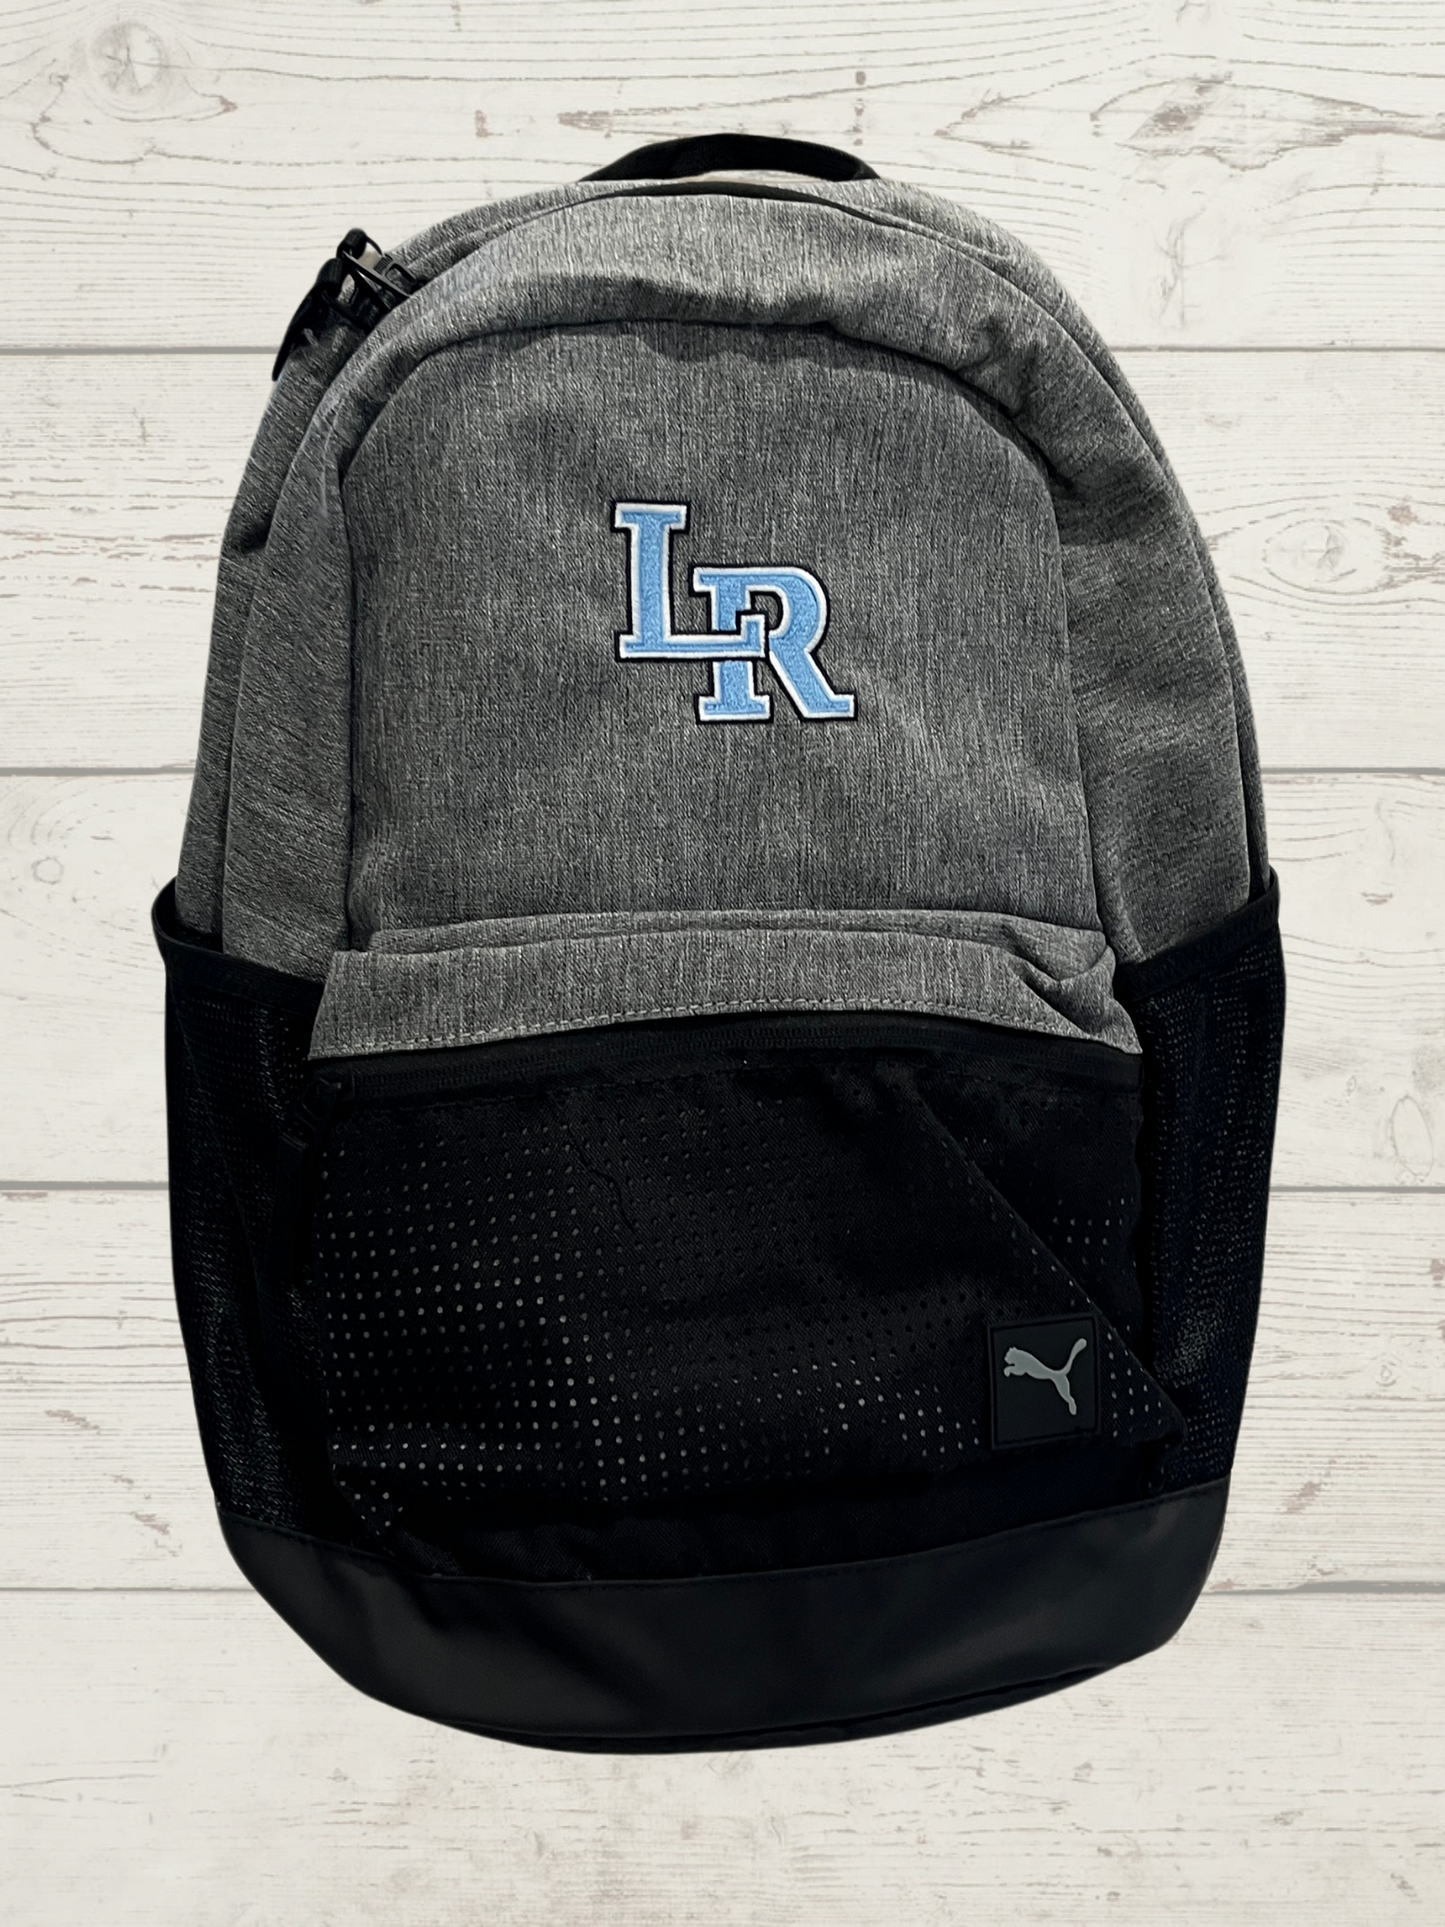 Puma LR Backpack